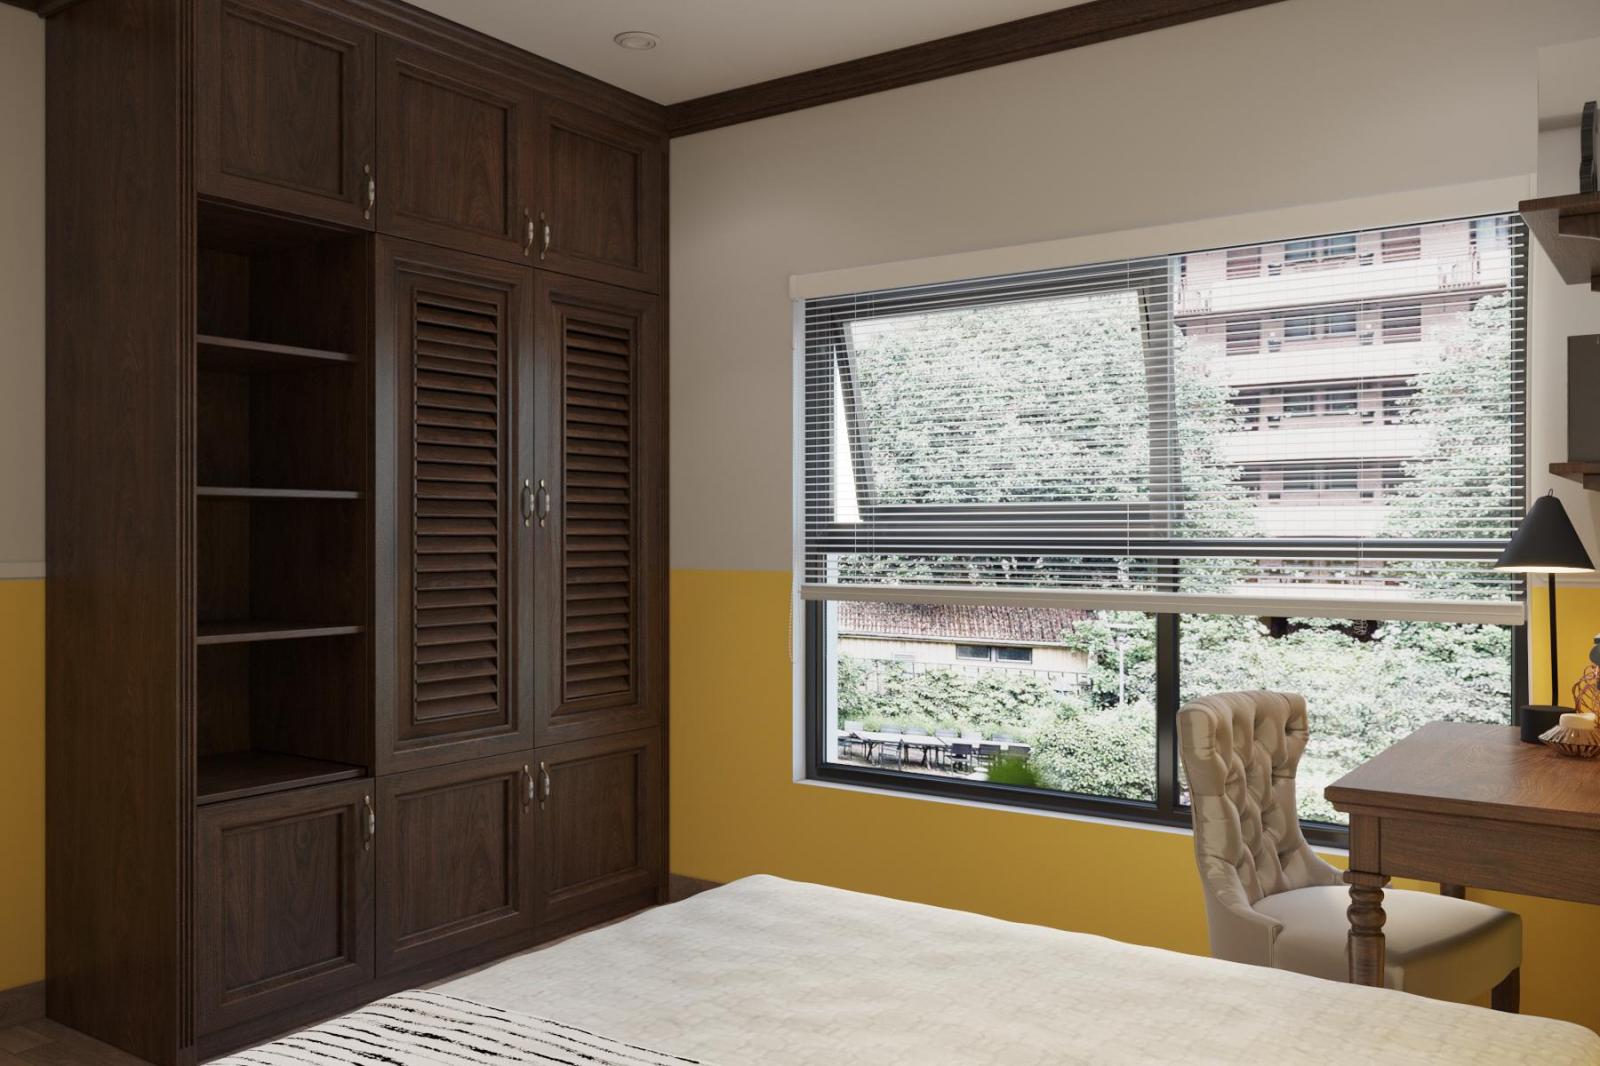 Sơn tường màu vàng kết hợp ánh sáng tự nhiên mang đến cho phòng ngủ căn hộ phong cách Indochine vẻ tươi mới, căng tràn sức sống.